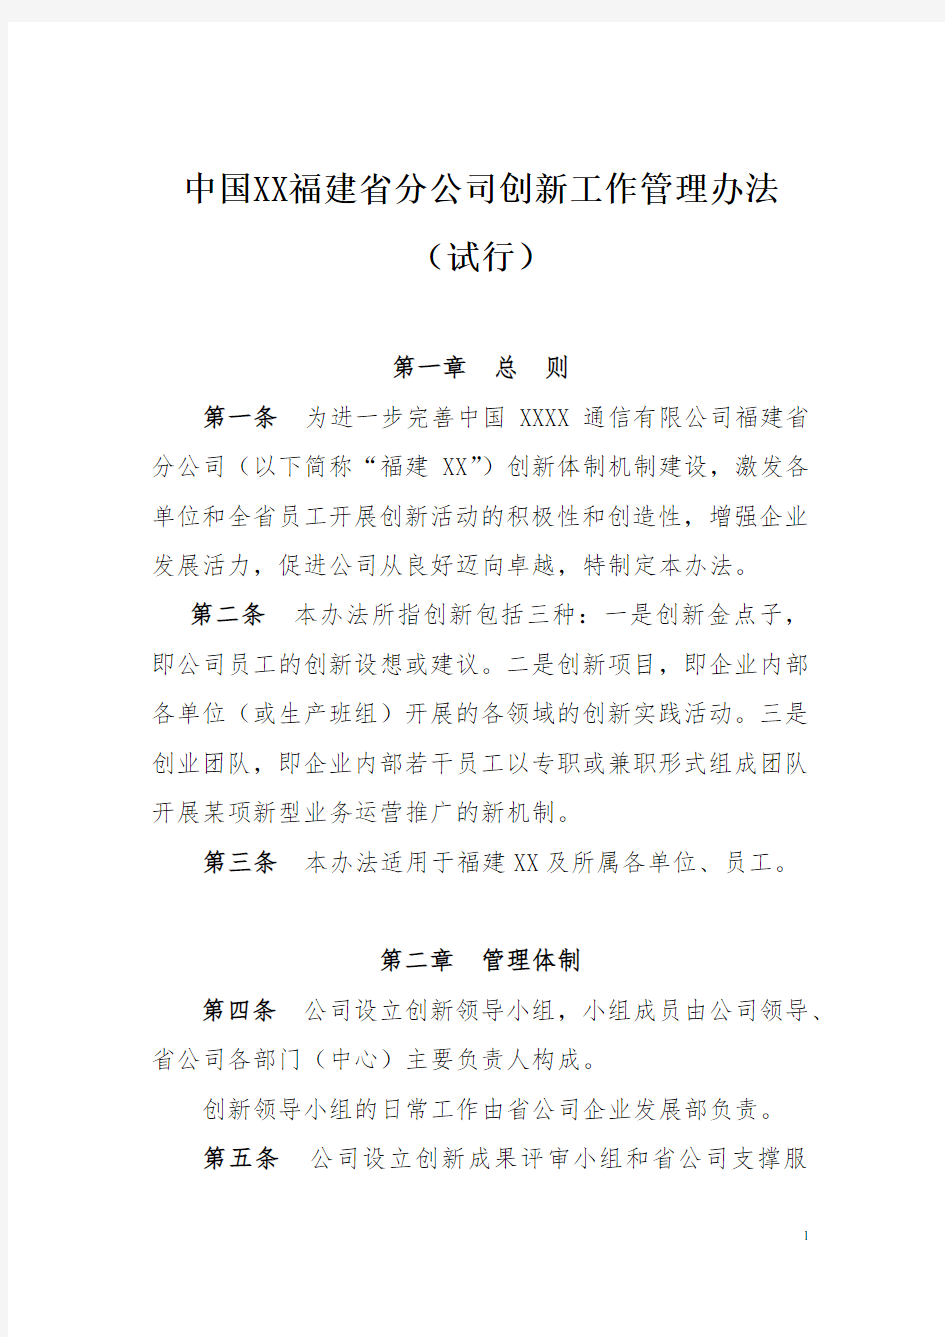 中国XXX公司创新工作管理办法(试行)